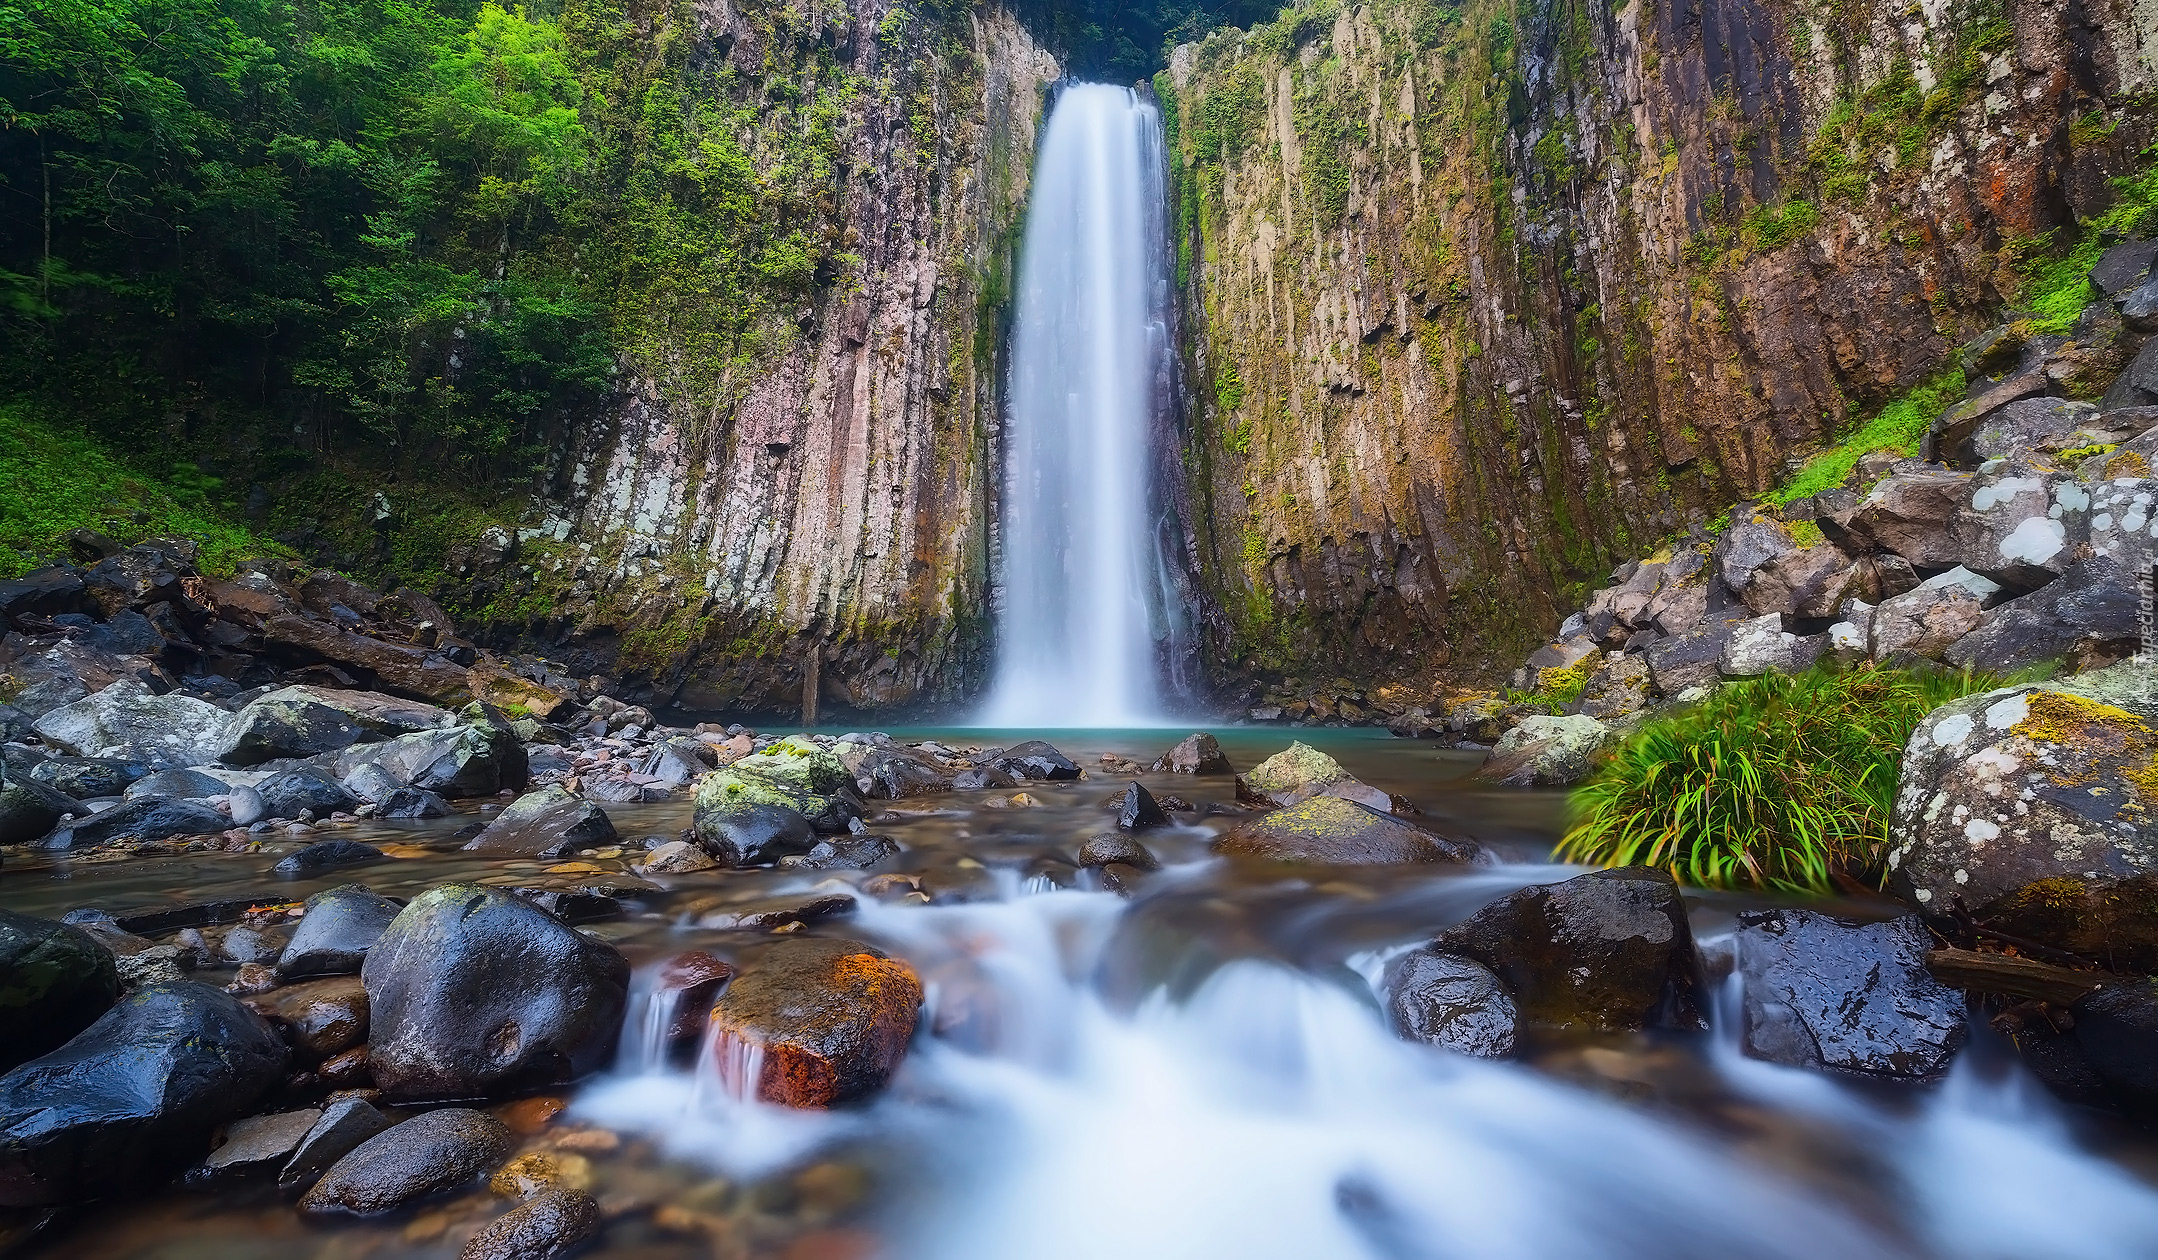 Wodospad, Kaname Falls, Kamienie, Rośliny, Skały, Hitoyoshi, Japonia